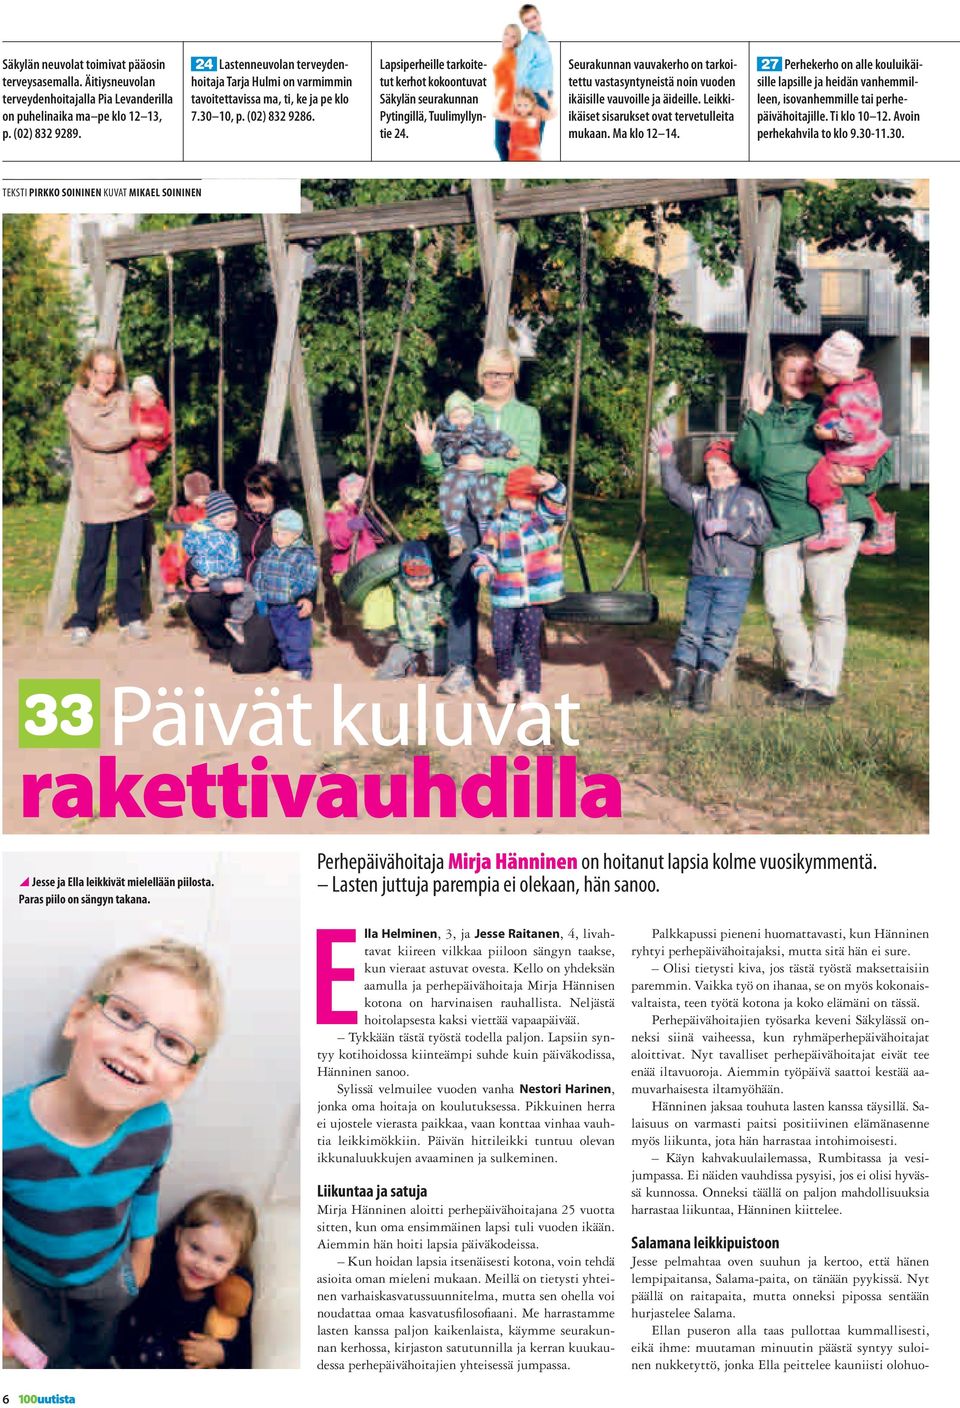 Lapsiperheille tarkoitetut kerhot kokoontuvat Säkylän seurakunnan Pytingillä, Tuulimyllyntie 24. Seurakunnan vauvakerho on tarkoitettu vastasyntyneistä noin vuoden ikäisille vauvoille ja äideille.